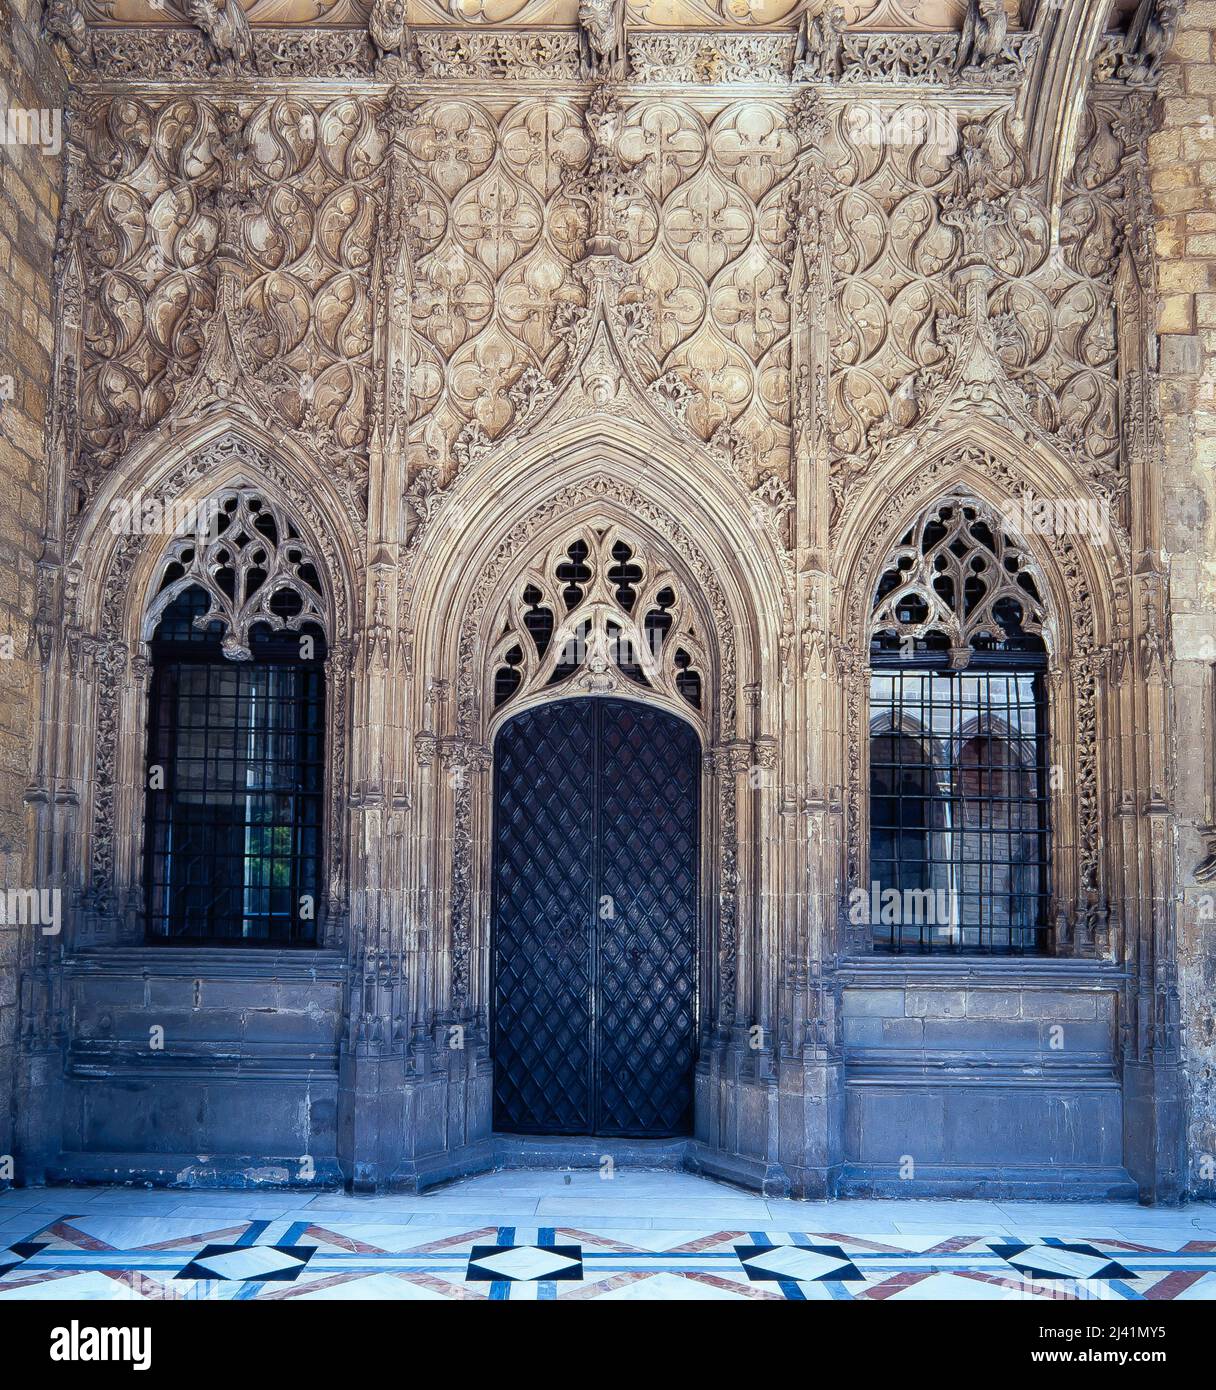 Marc Safont, fachada de la capilla de Sant Jordi, siglo XV. Palau de la Generalitat, Barcelona. Author: MARC SAFONT (CA. 1385-1458). Stock Photo